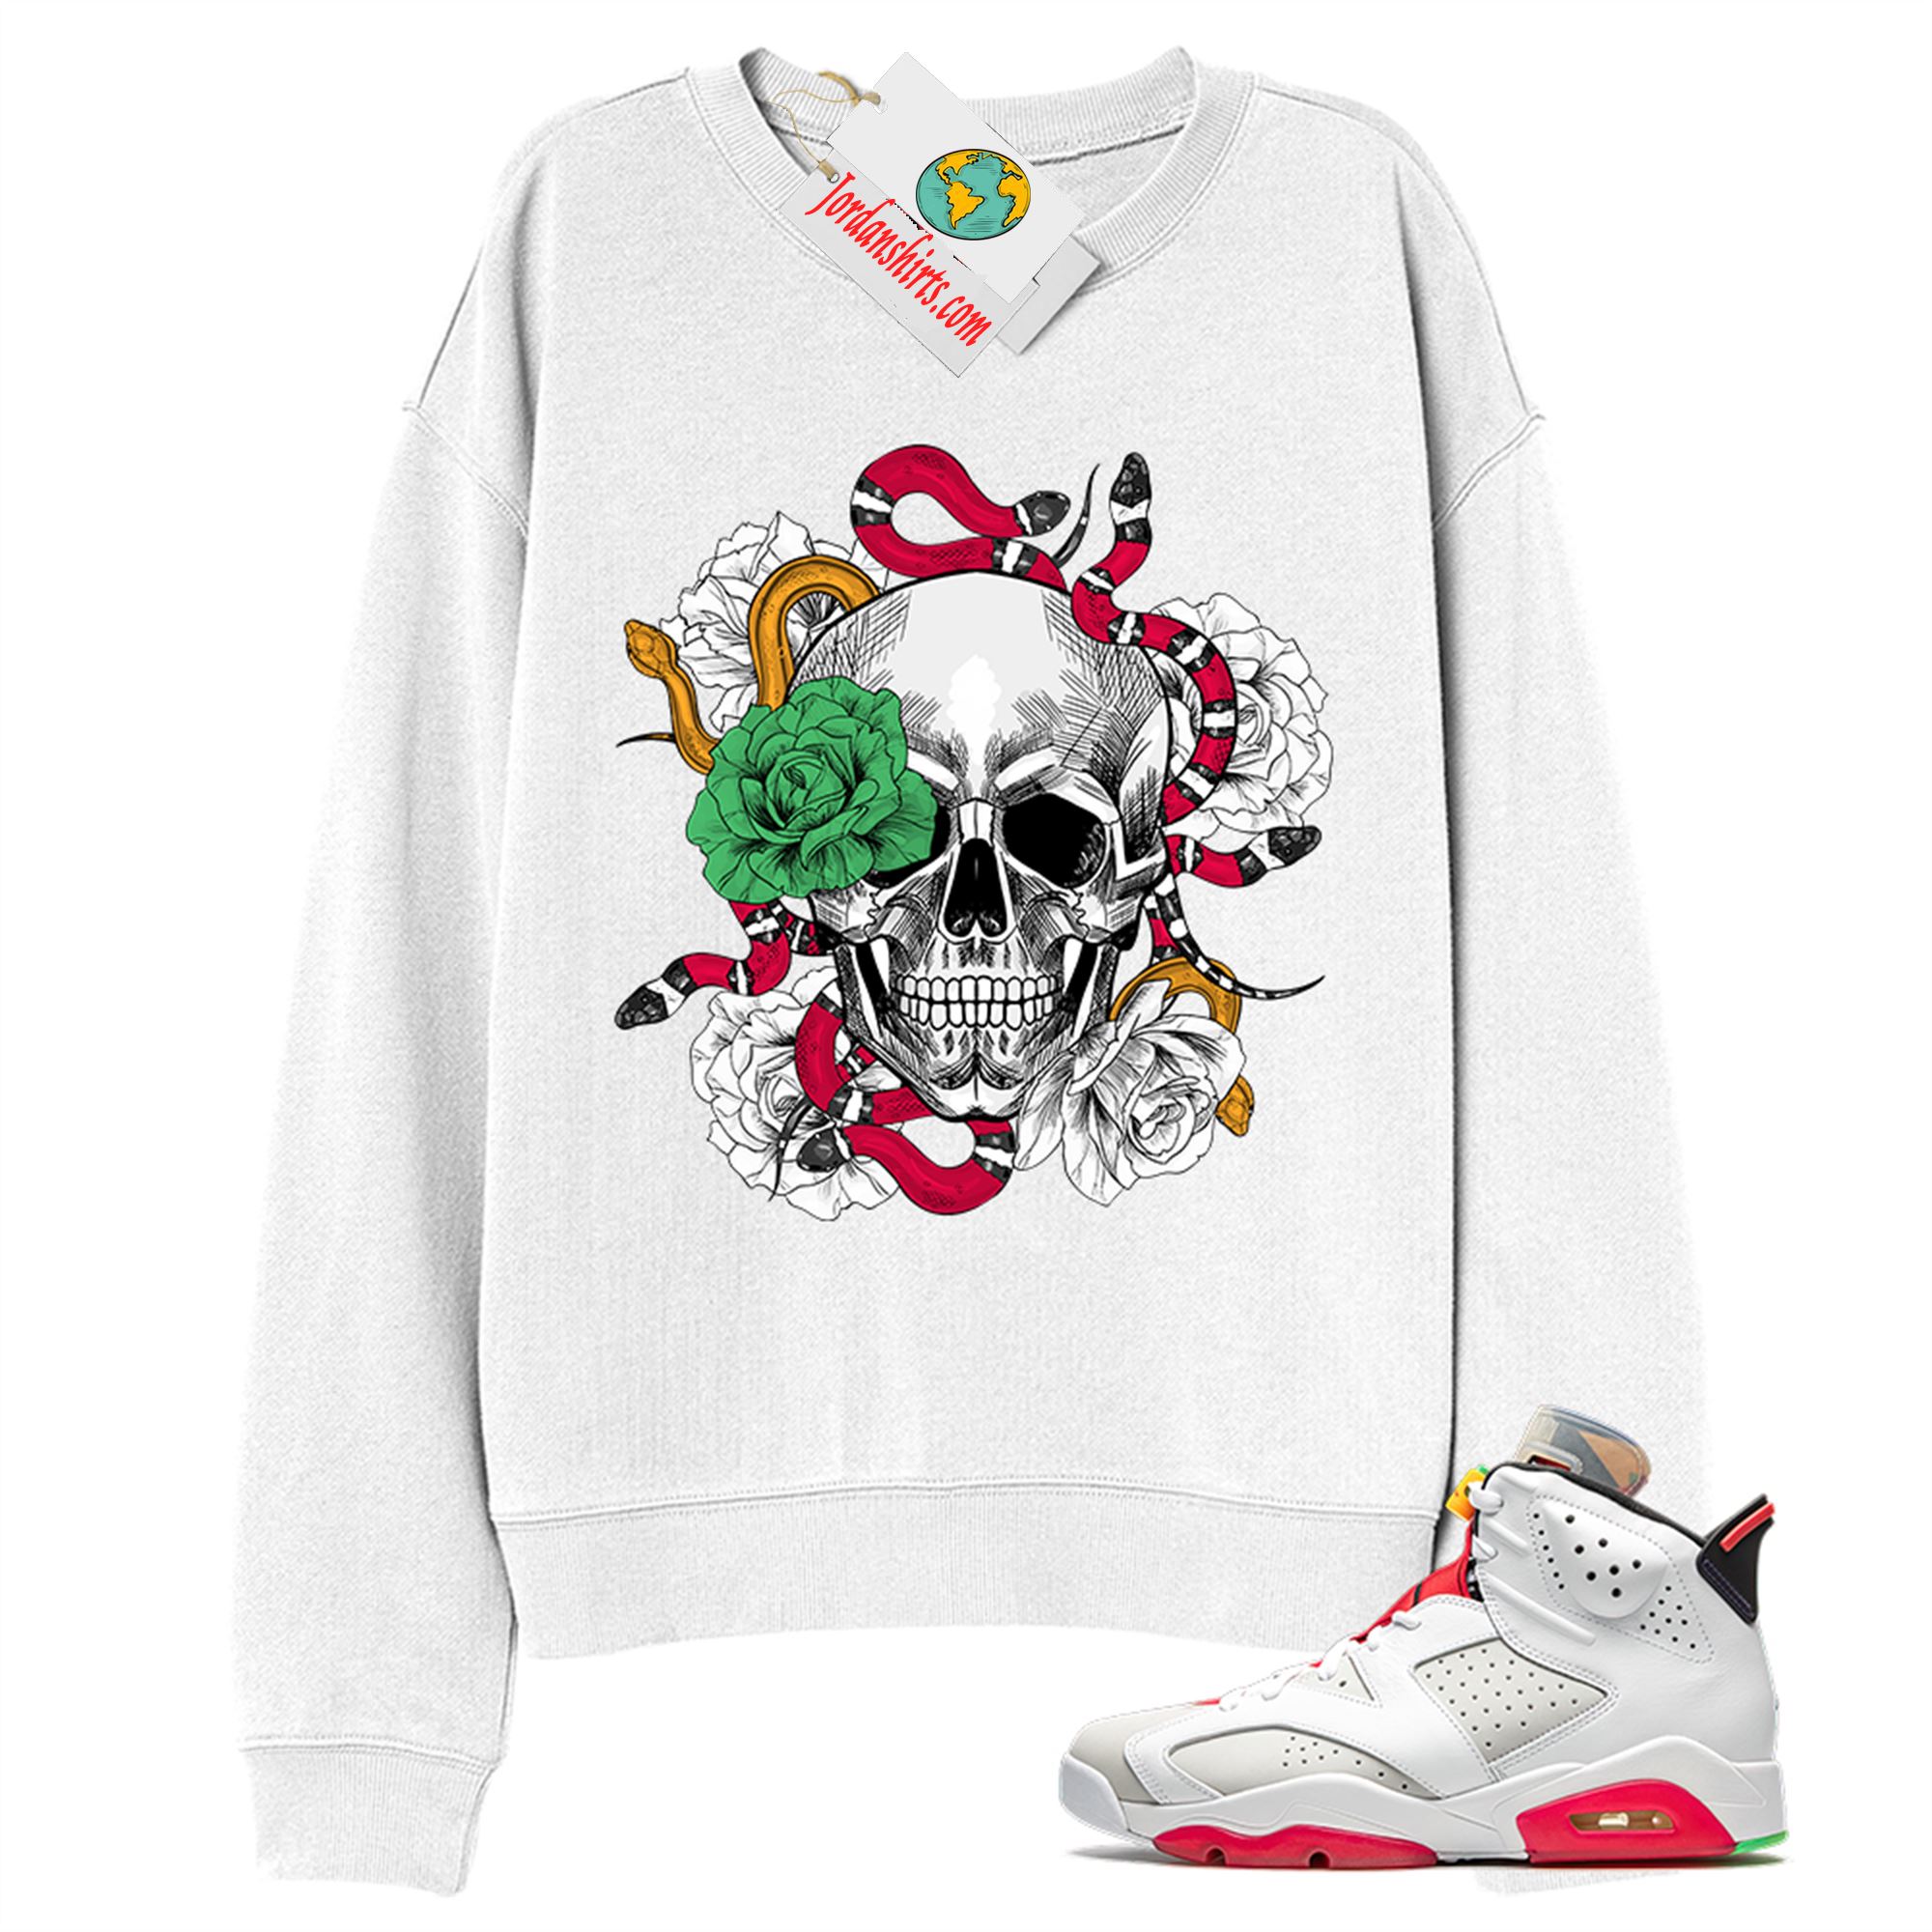 Jordan 6 Sweatshirt, Snake Skull Rose White Sweatshirt Air Jordan 6 Hare 6s Plus Size Up To 5xl